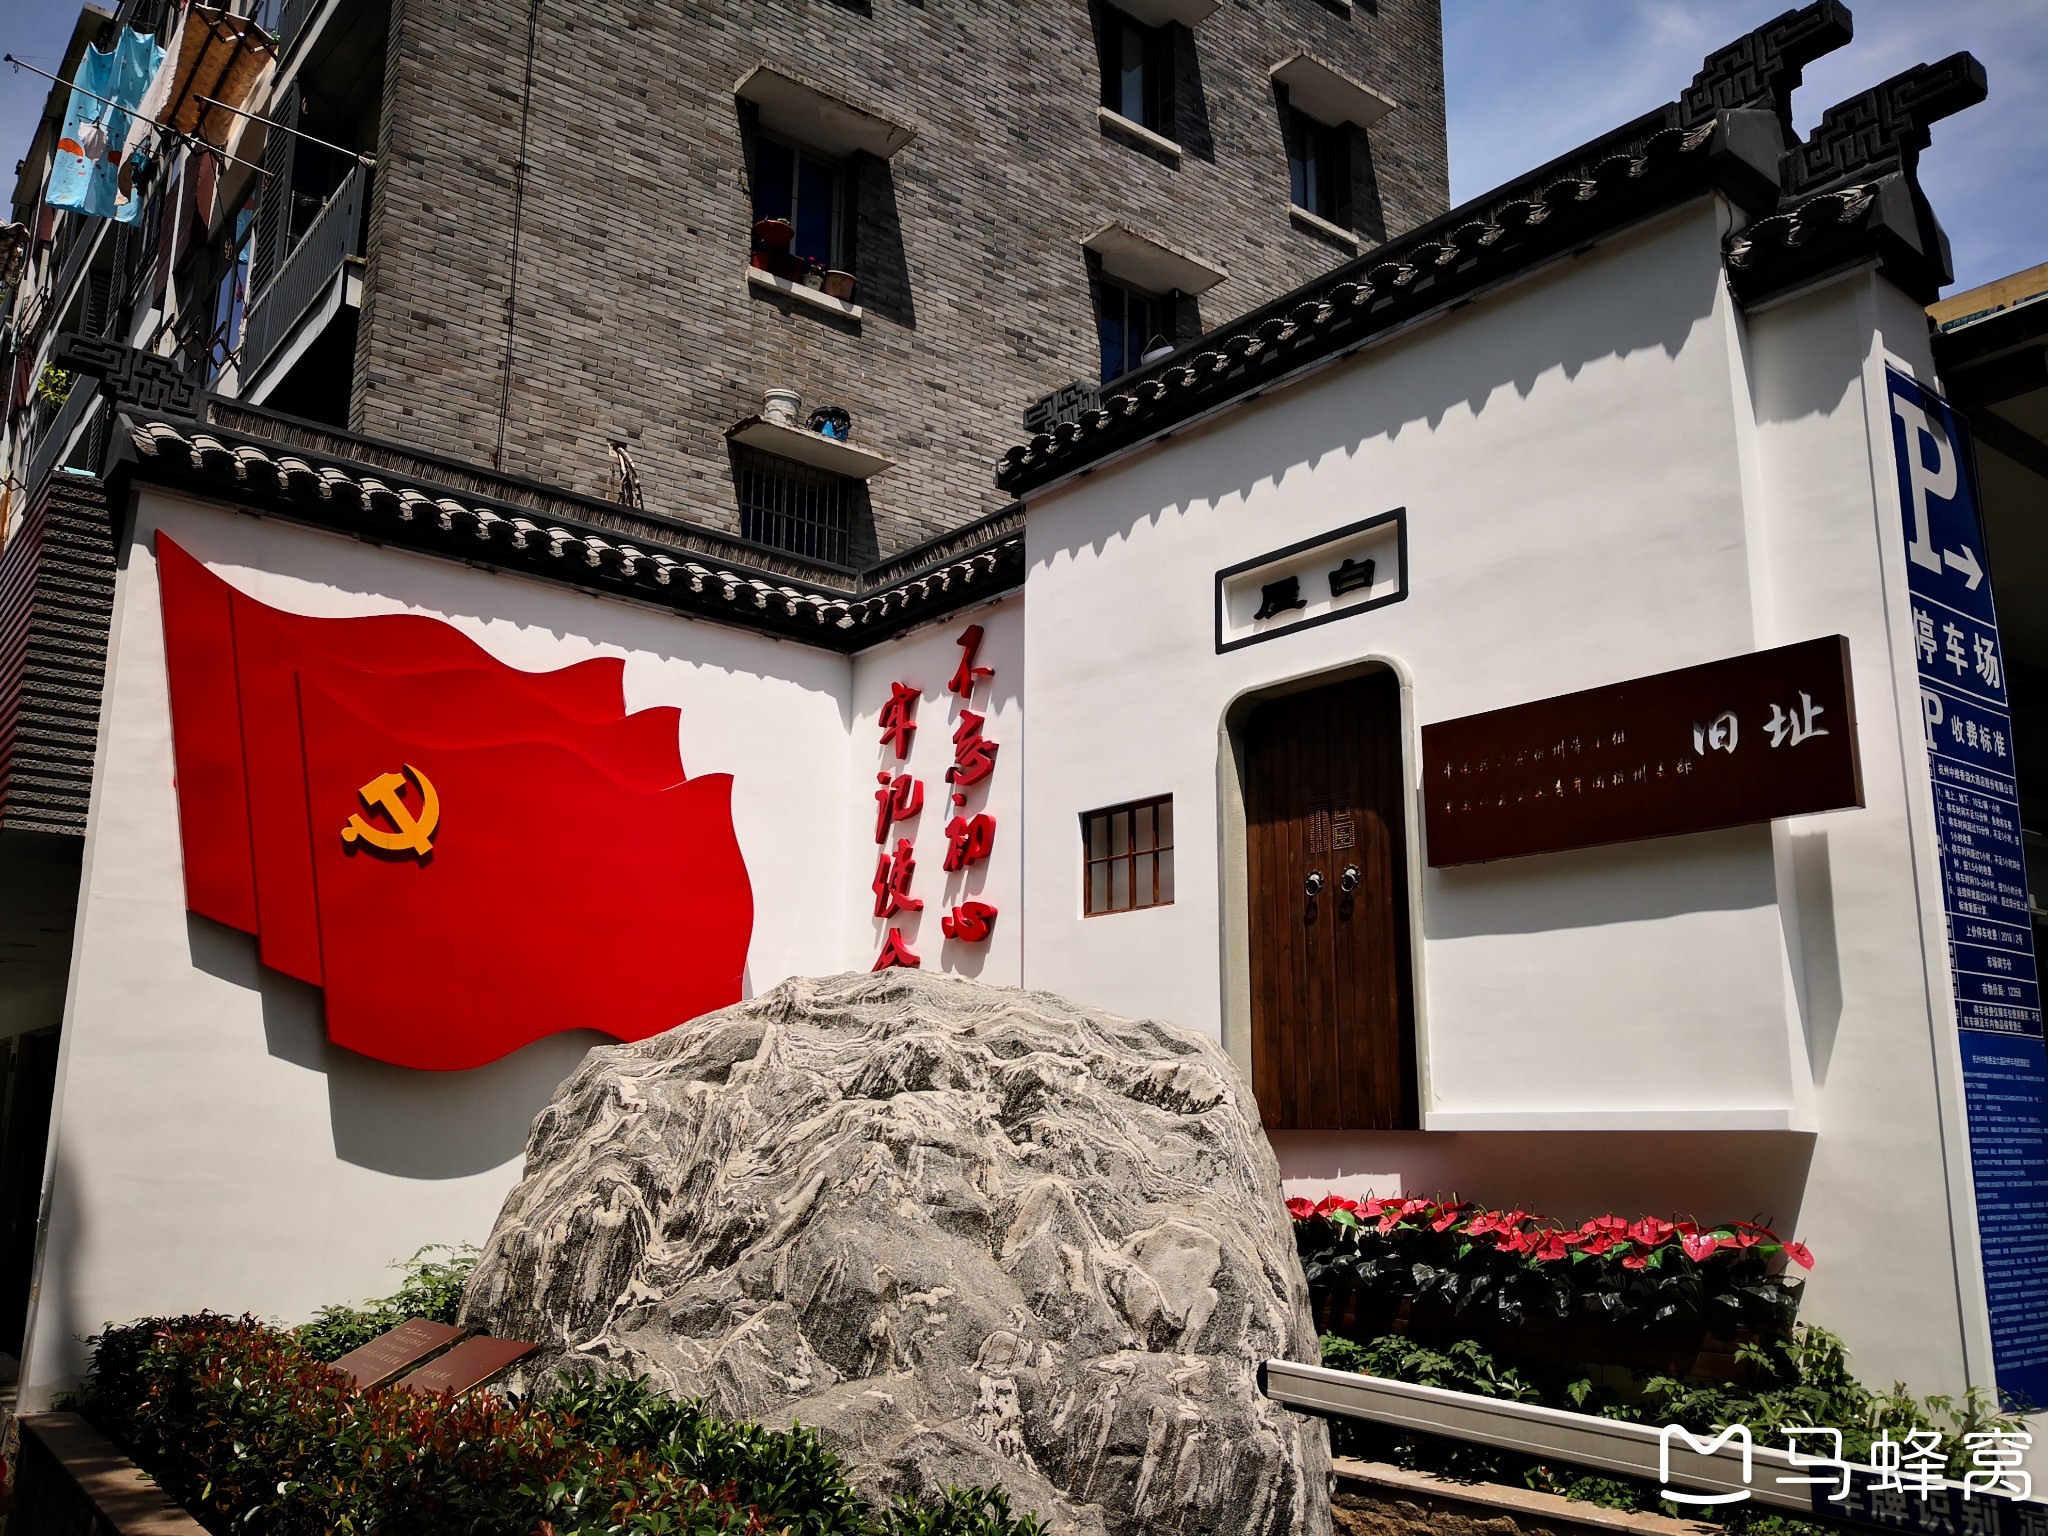 周末参观杭州上城区小营巷的中共杭州小组纪念馆